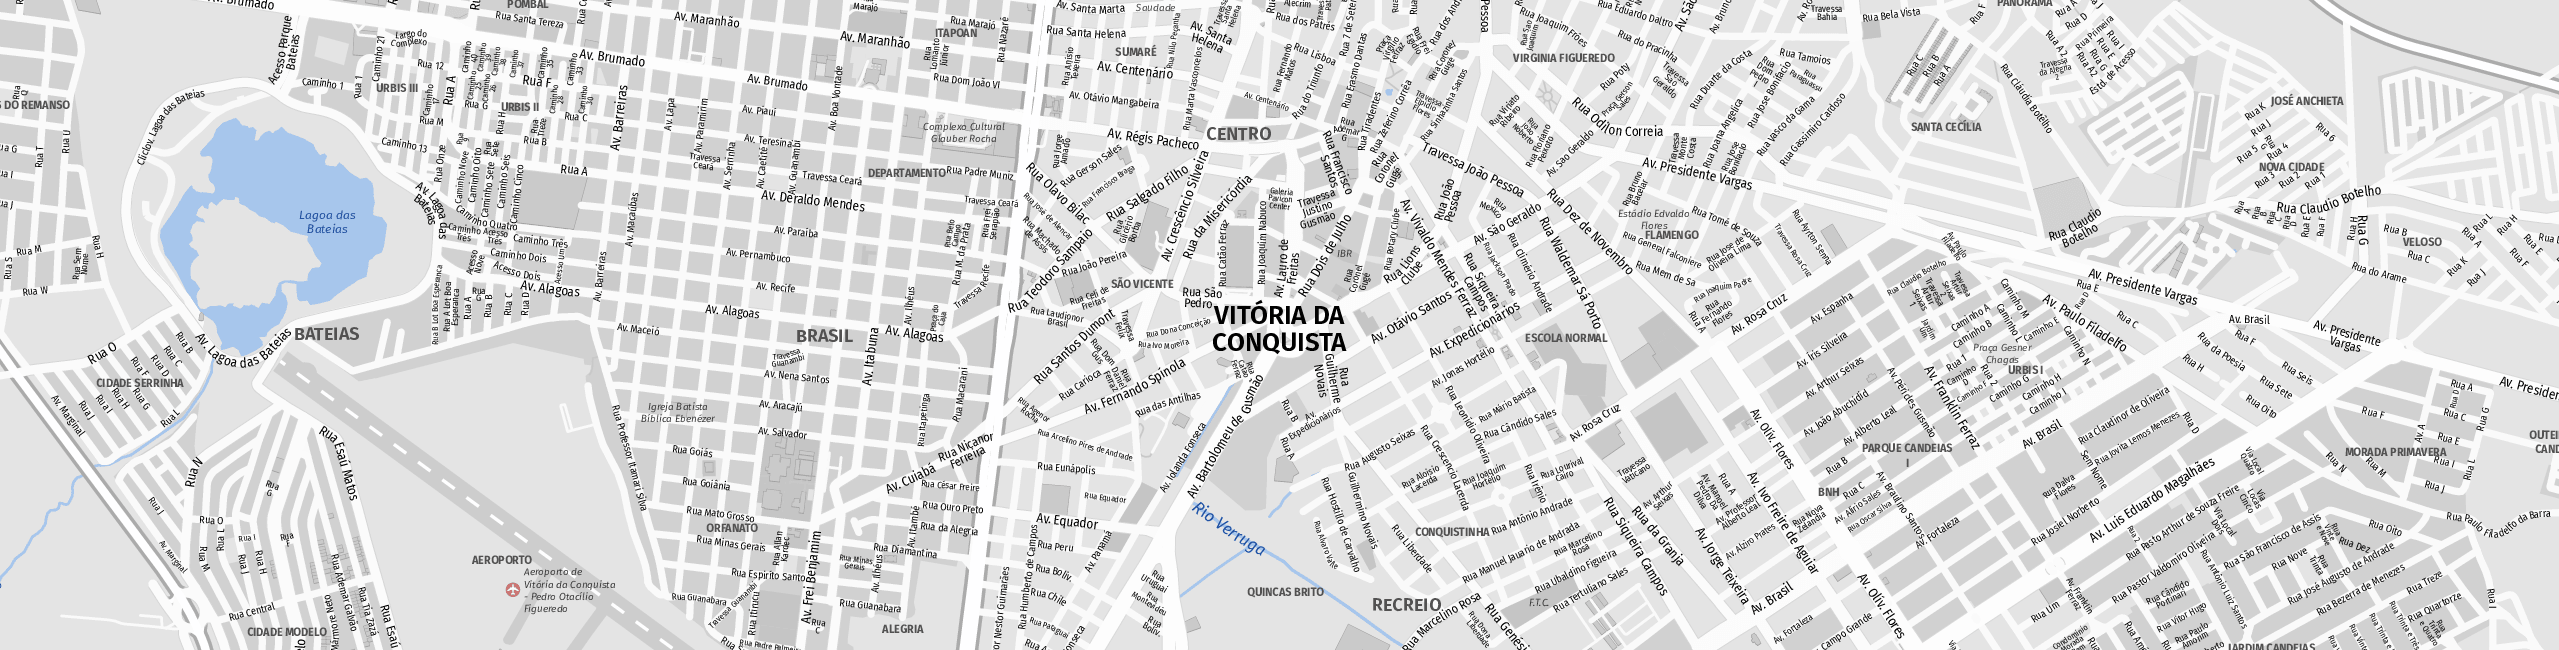 Stadtplan Vitória da Conquista zum Downloaden.